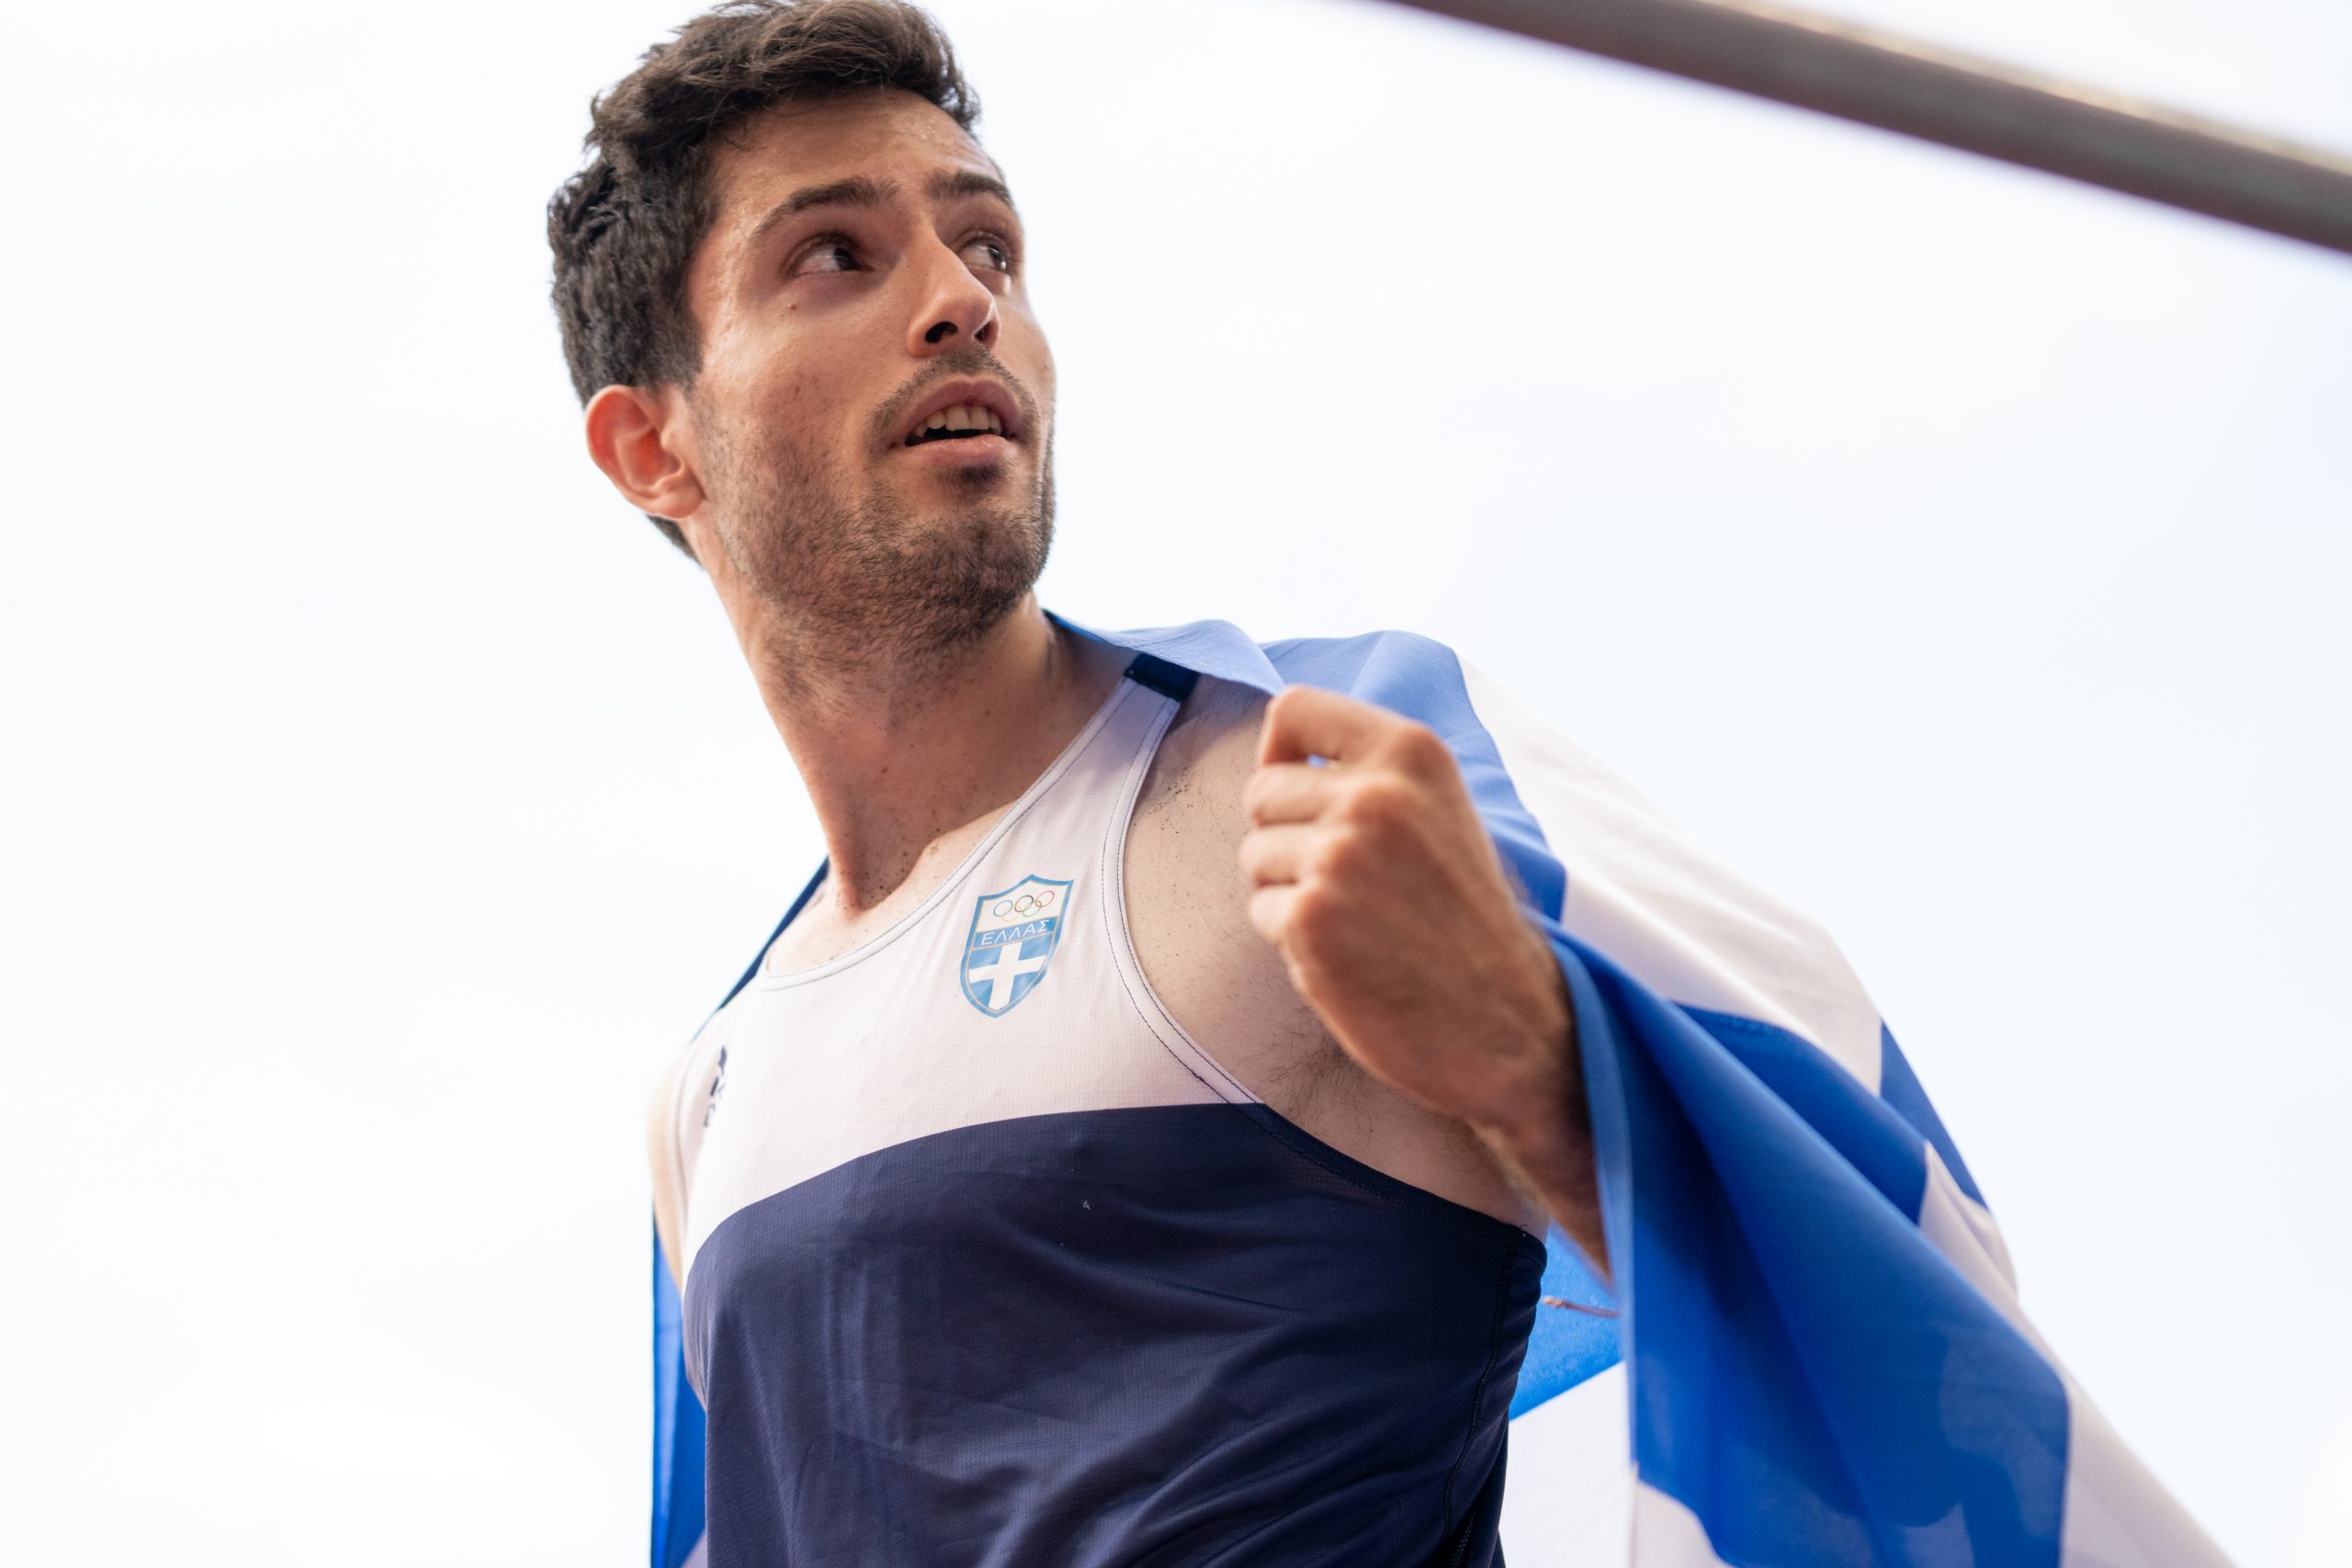 Μίλτος Τεντόγλου: Υποψήφιος κορυφαίος αθλητής της χρονιάς στην Ευρώπη